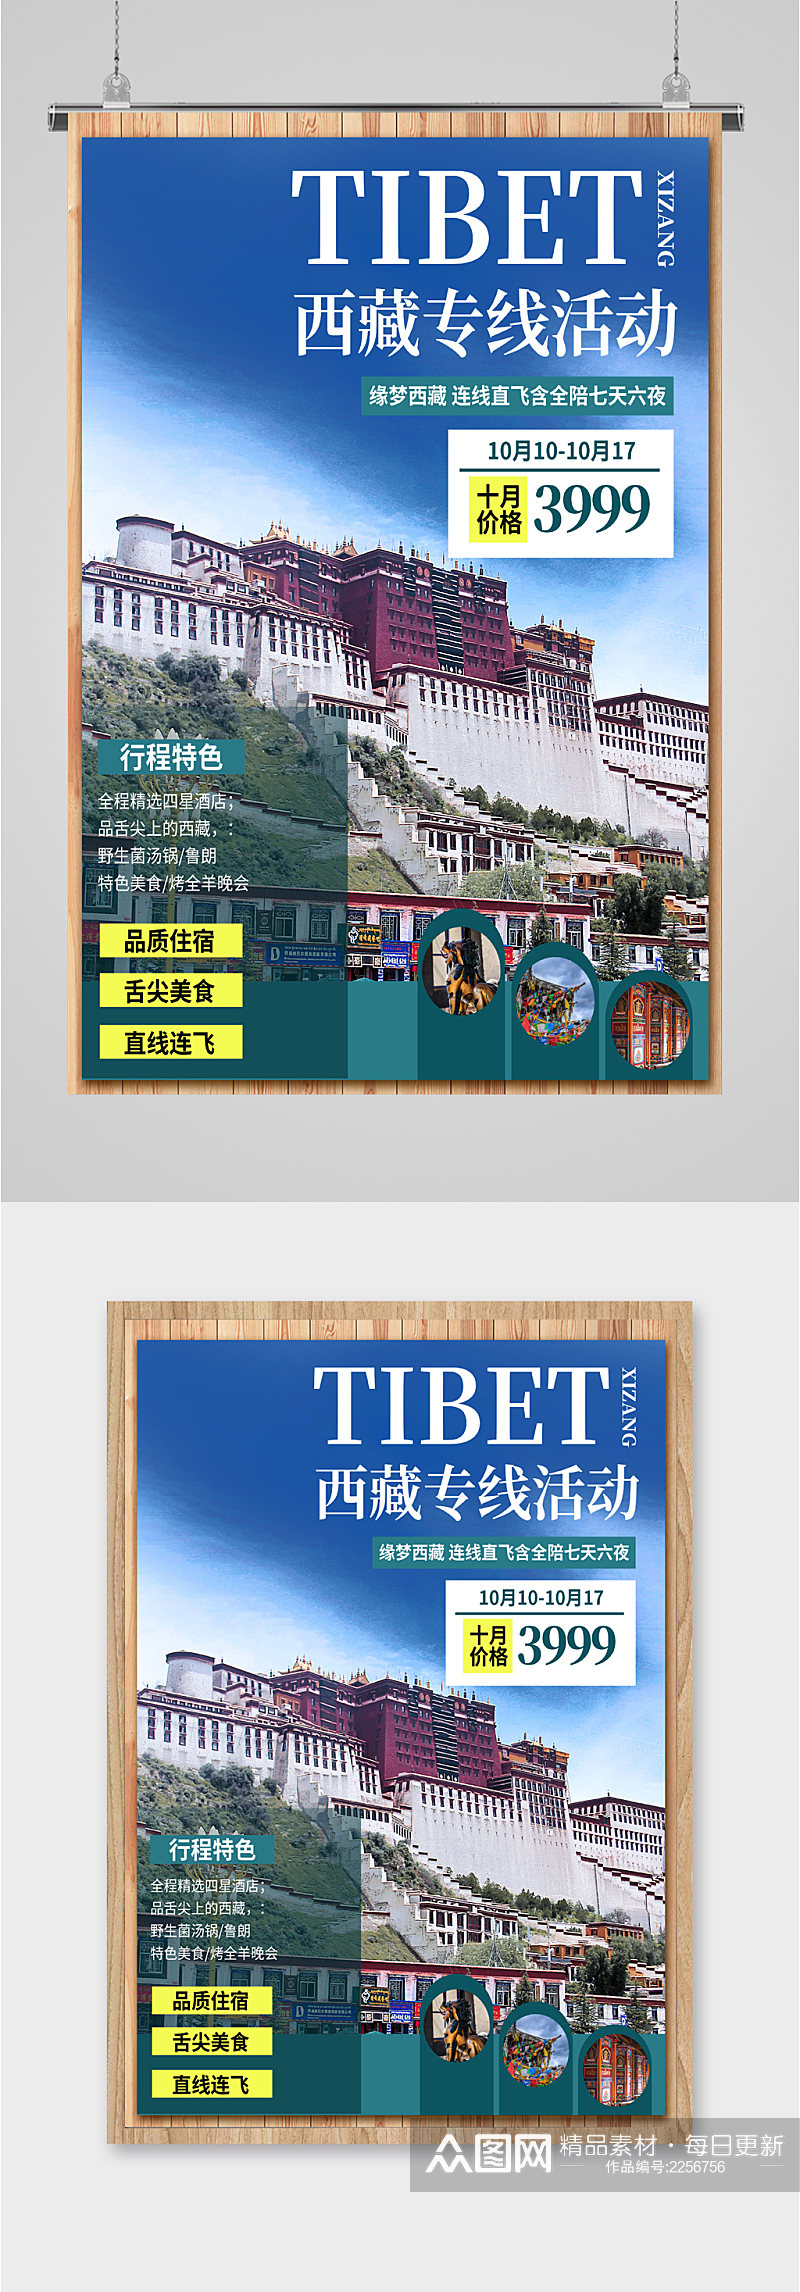 西藏专线活动旅游海报素材